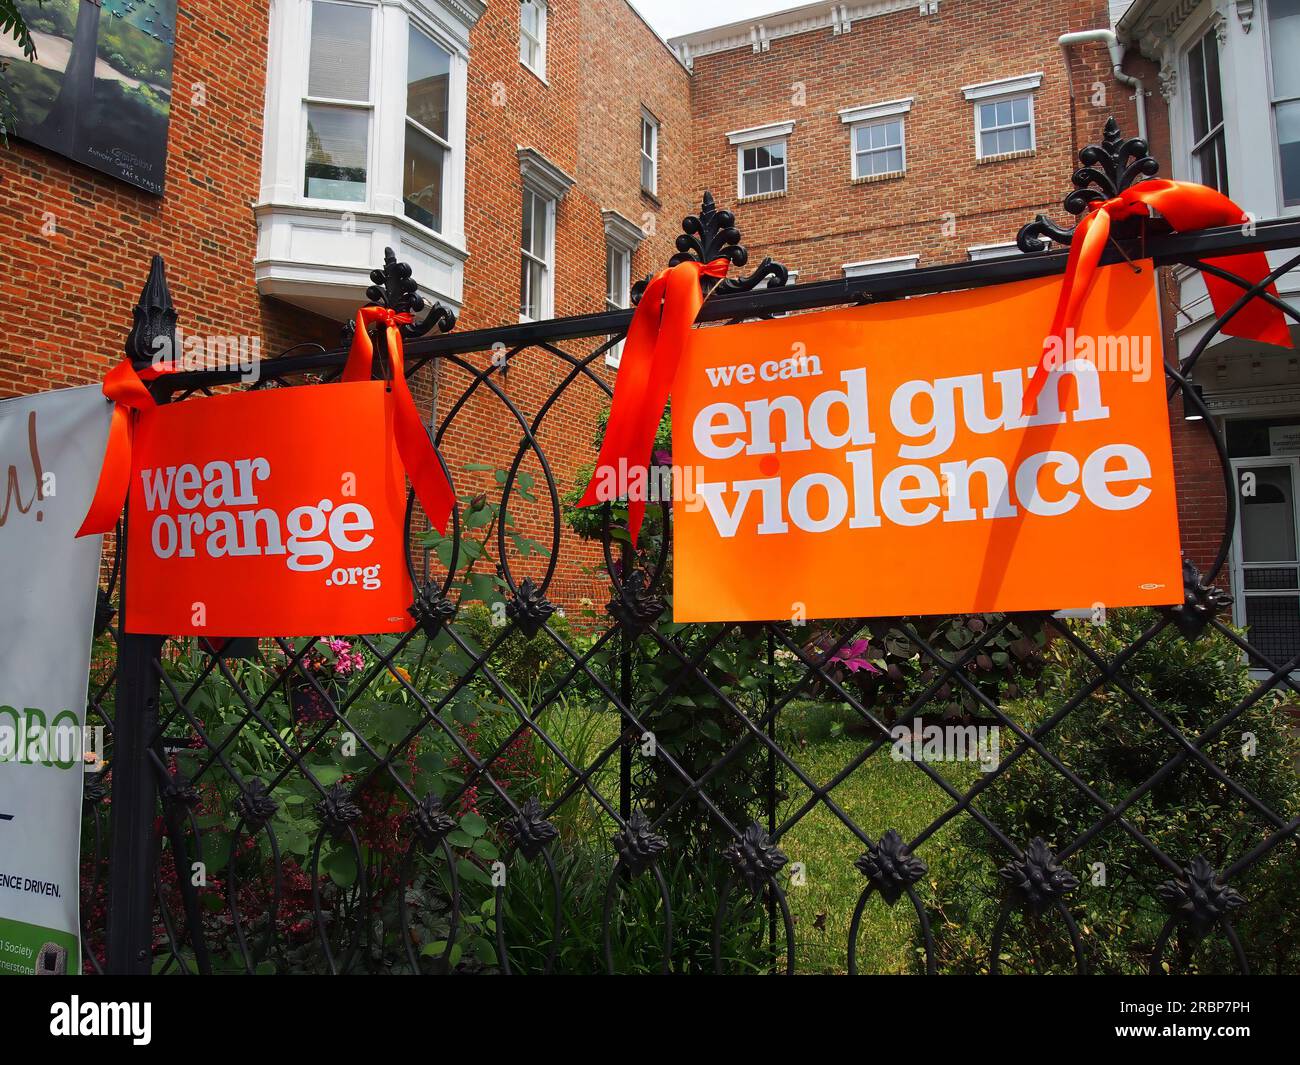 Cartellonistica per la campagna di violenza sulle armi da fuoco wearorange.org's a Frederick, Maryland, 3 giugno 2023, © Katharine Andriotis Foto Stock